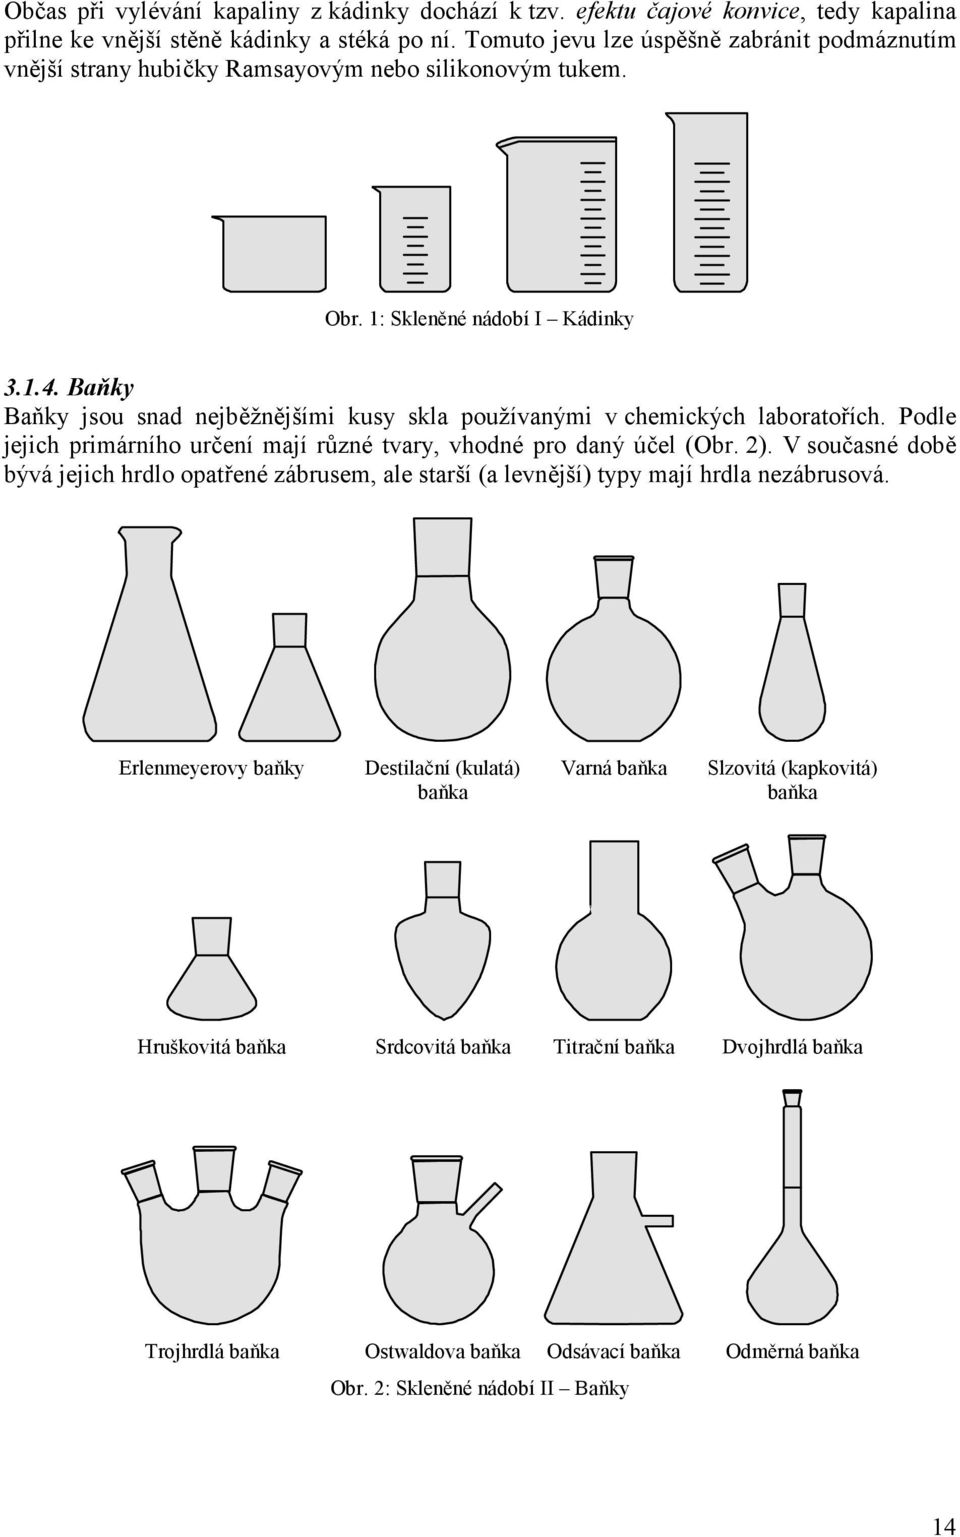 Baňky Baňky jsou snad nejběžnějšími kusy skla používanými v chemických laboratořích. Podle jejich primárního určení mají různé tvary, vhodné pro daný účel (Obr. 2).